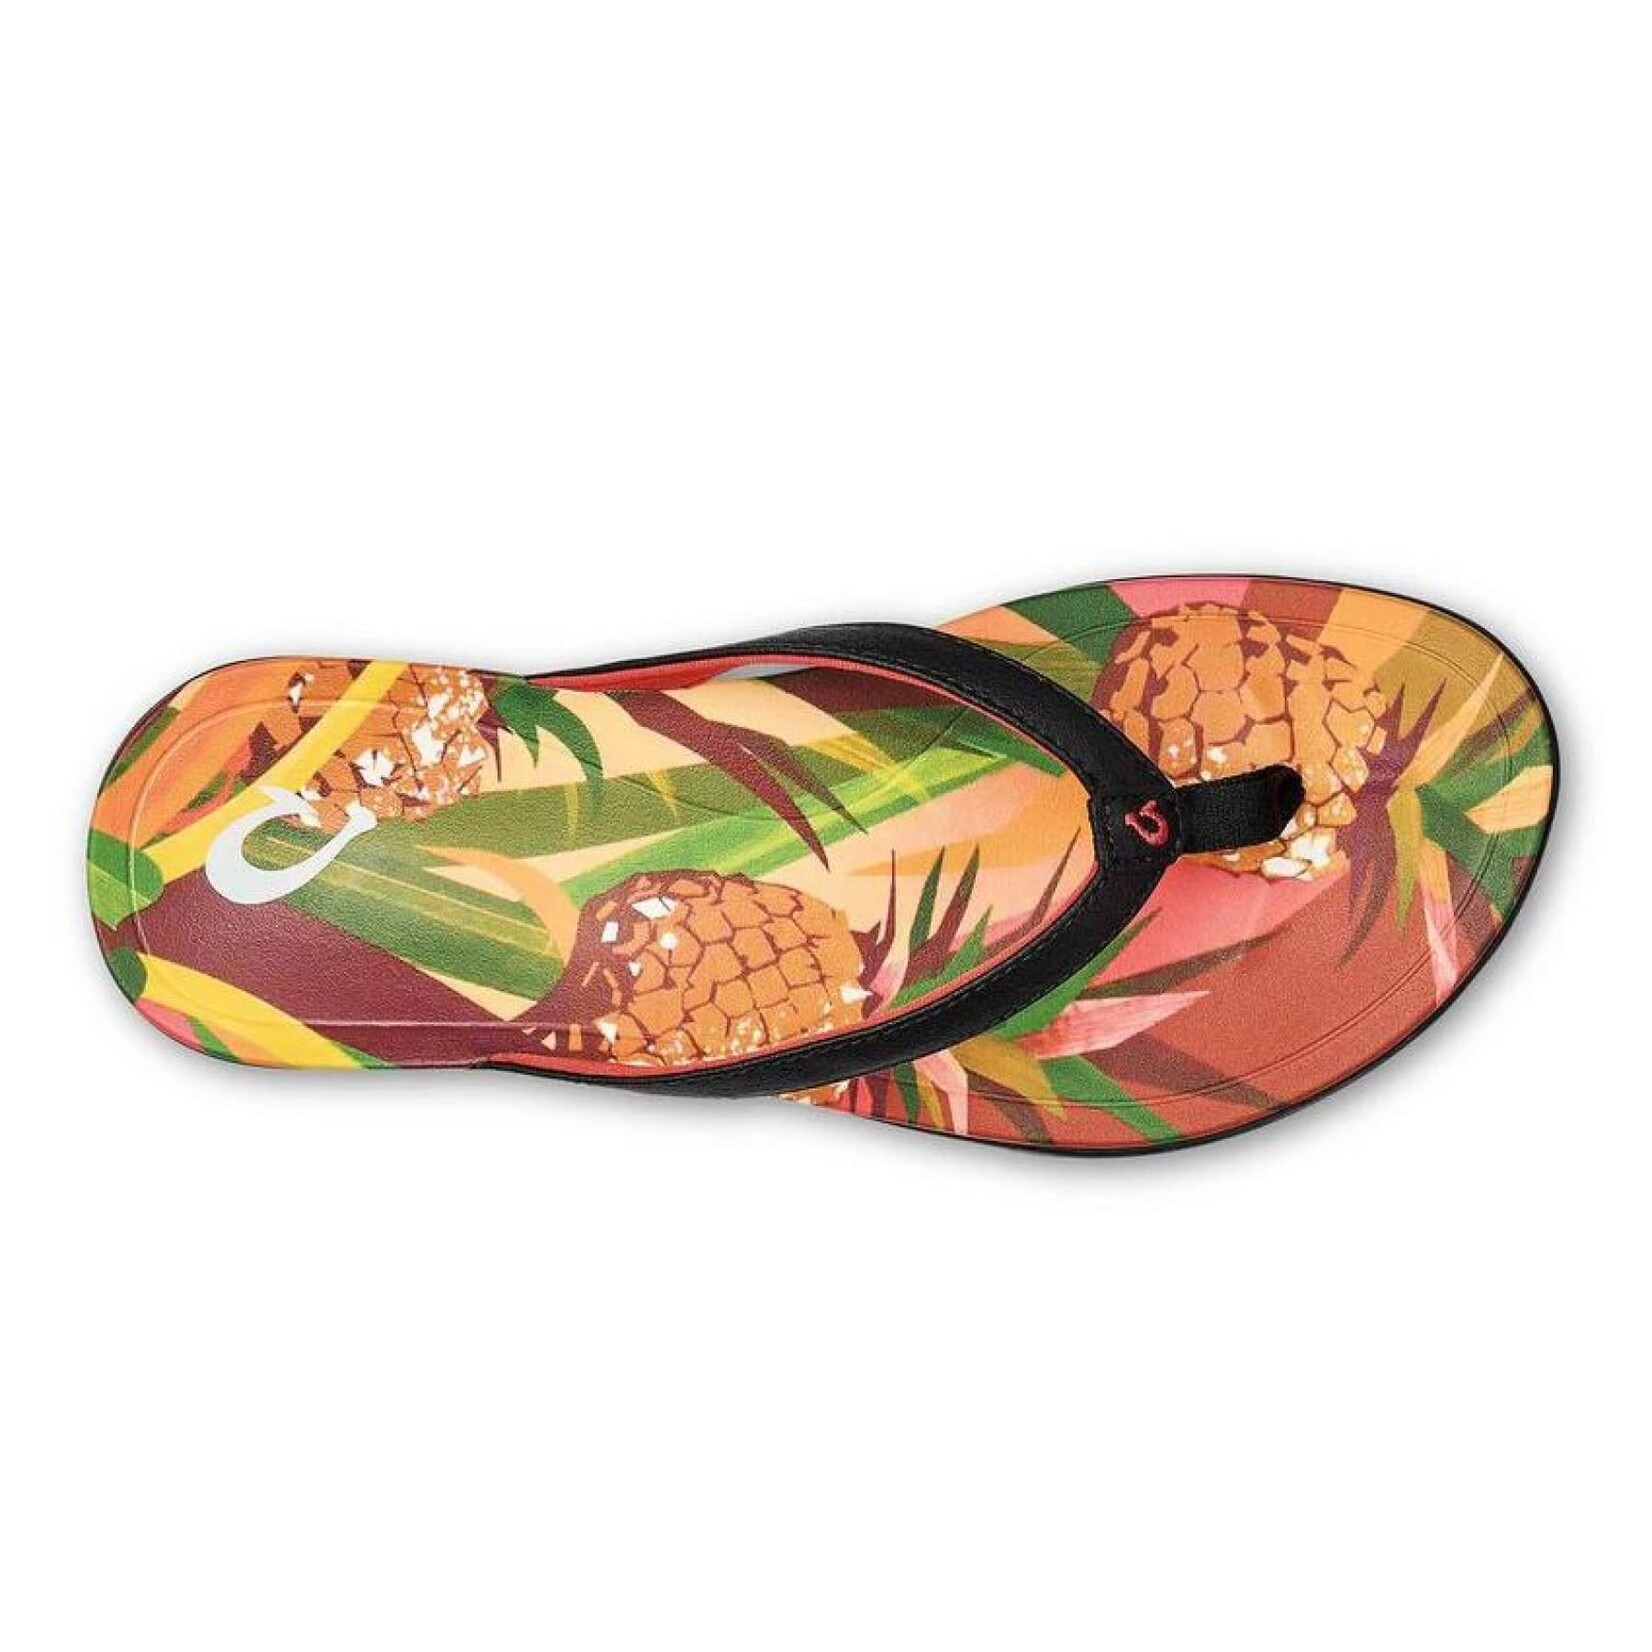 OluKai OluKai W's Ho'opio Hau Beach Sandals